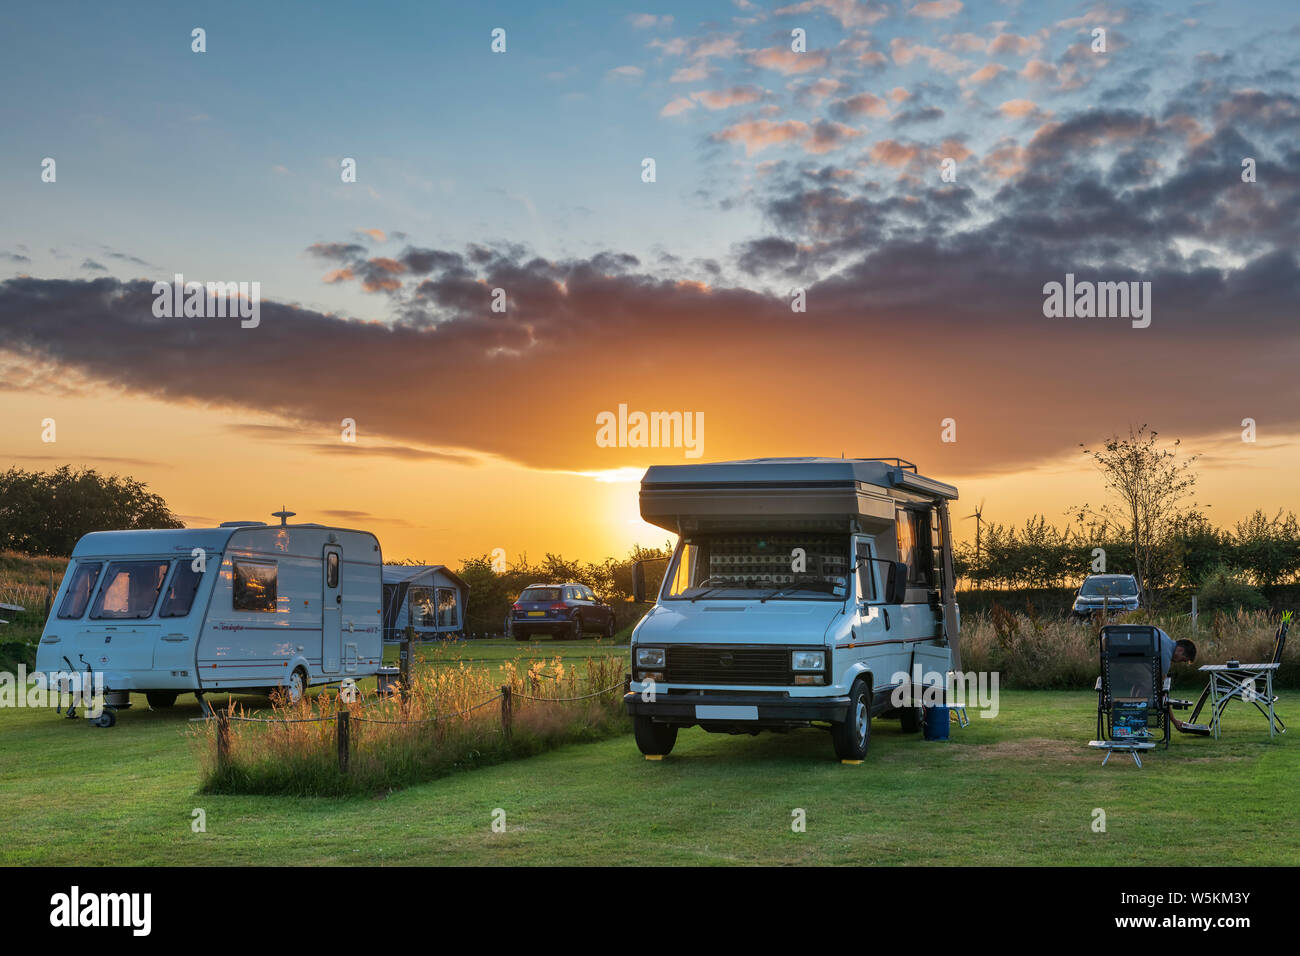 Le soleil se couche derrière un camping-car sur un camping populaire après une belle journée d'été dans le Nord du Devon. Banque D'Images